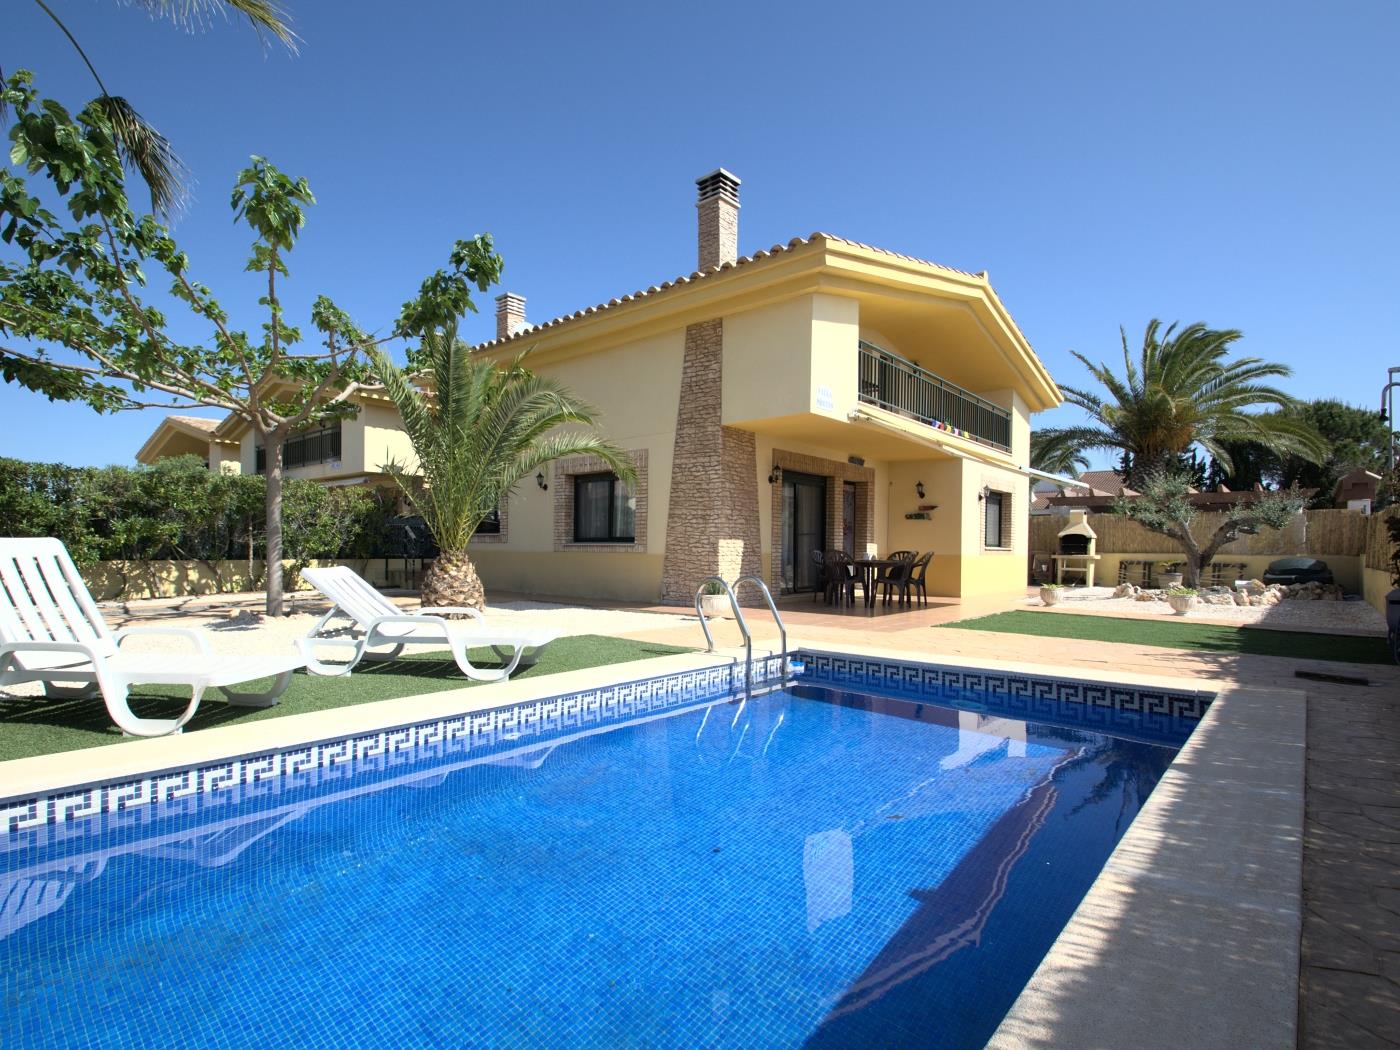 Villa Moreno per a 6 persones i piscina privada a Riumar Deltebre